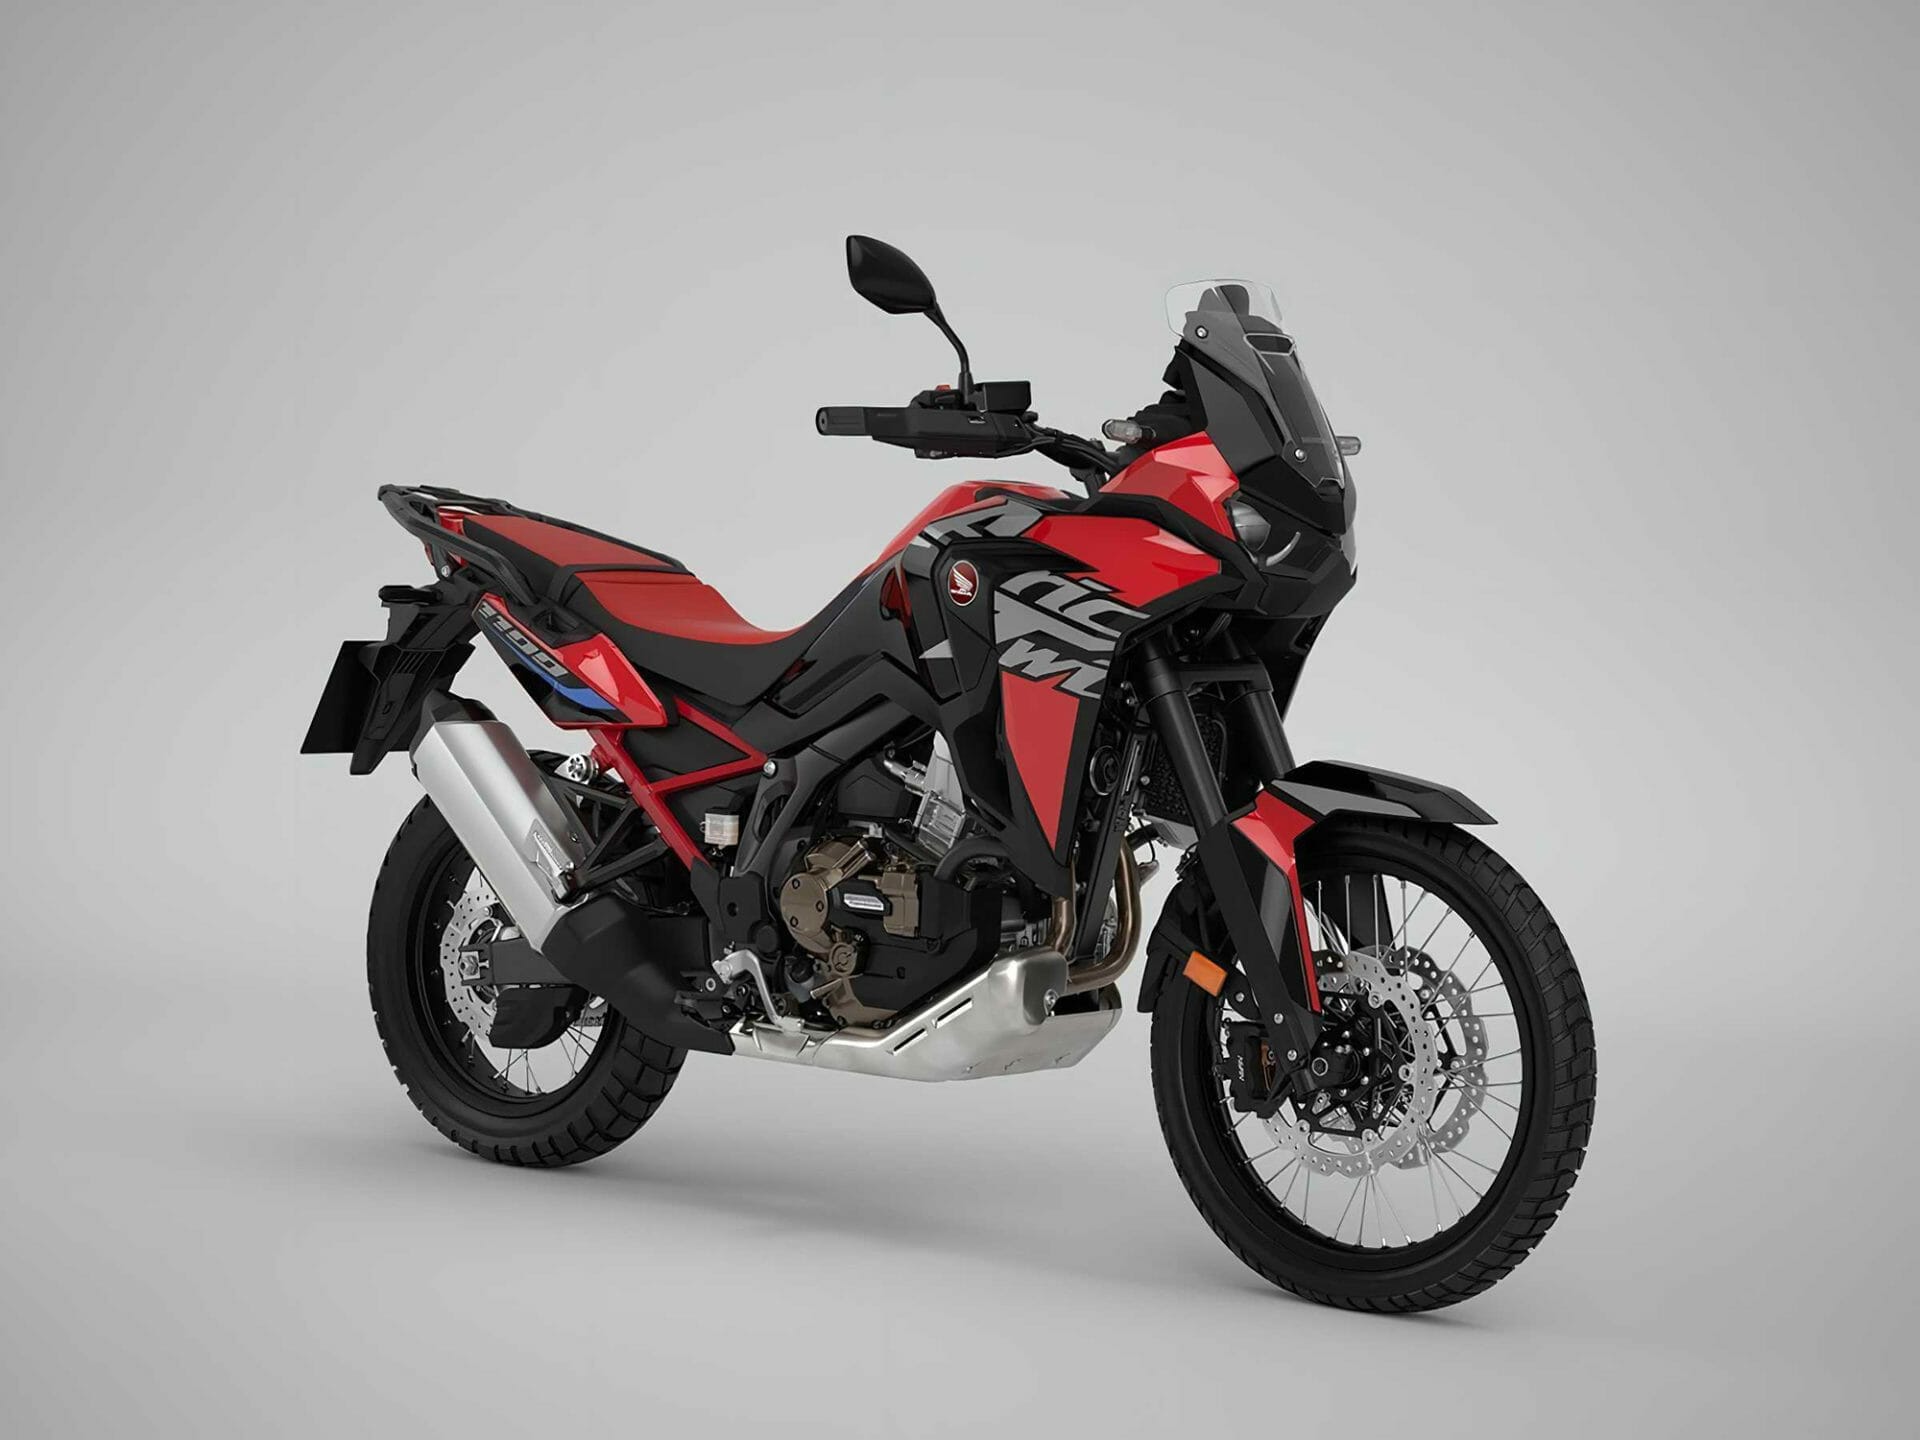 Honda CRF1100 Africa Twin 2023 in neuen Farben - MOTORCYCLES.NEWS via @motorradnachrichten